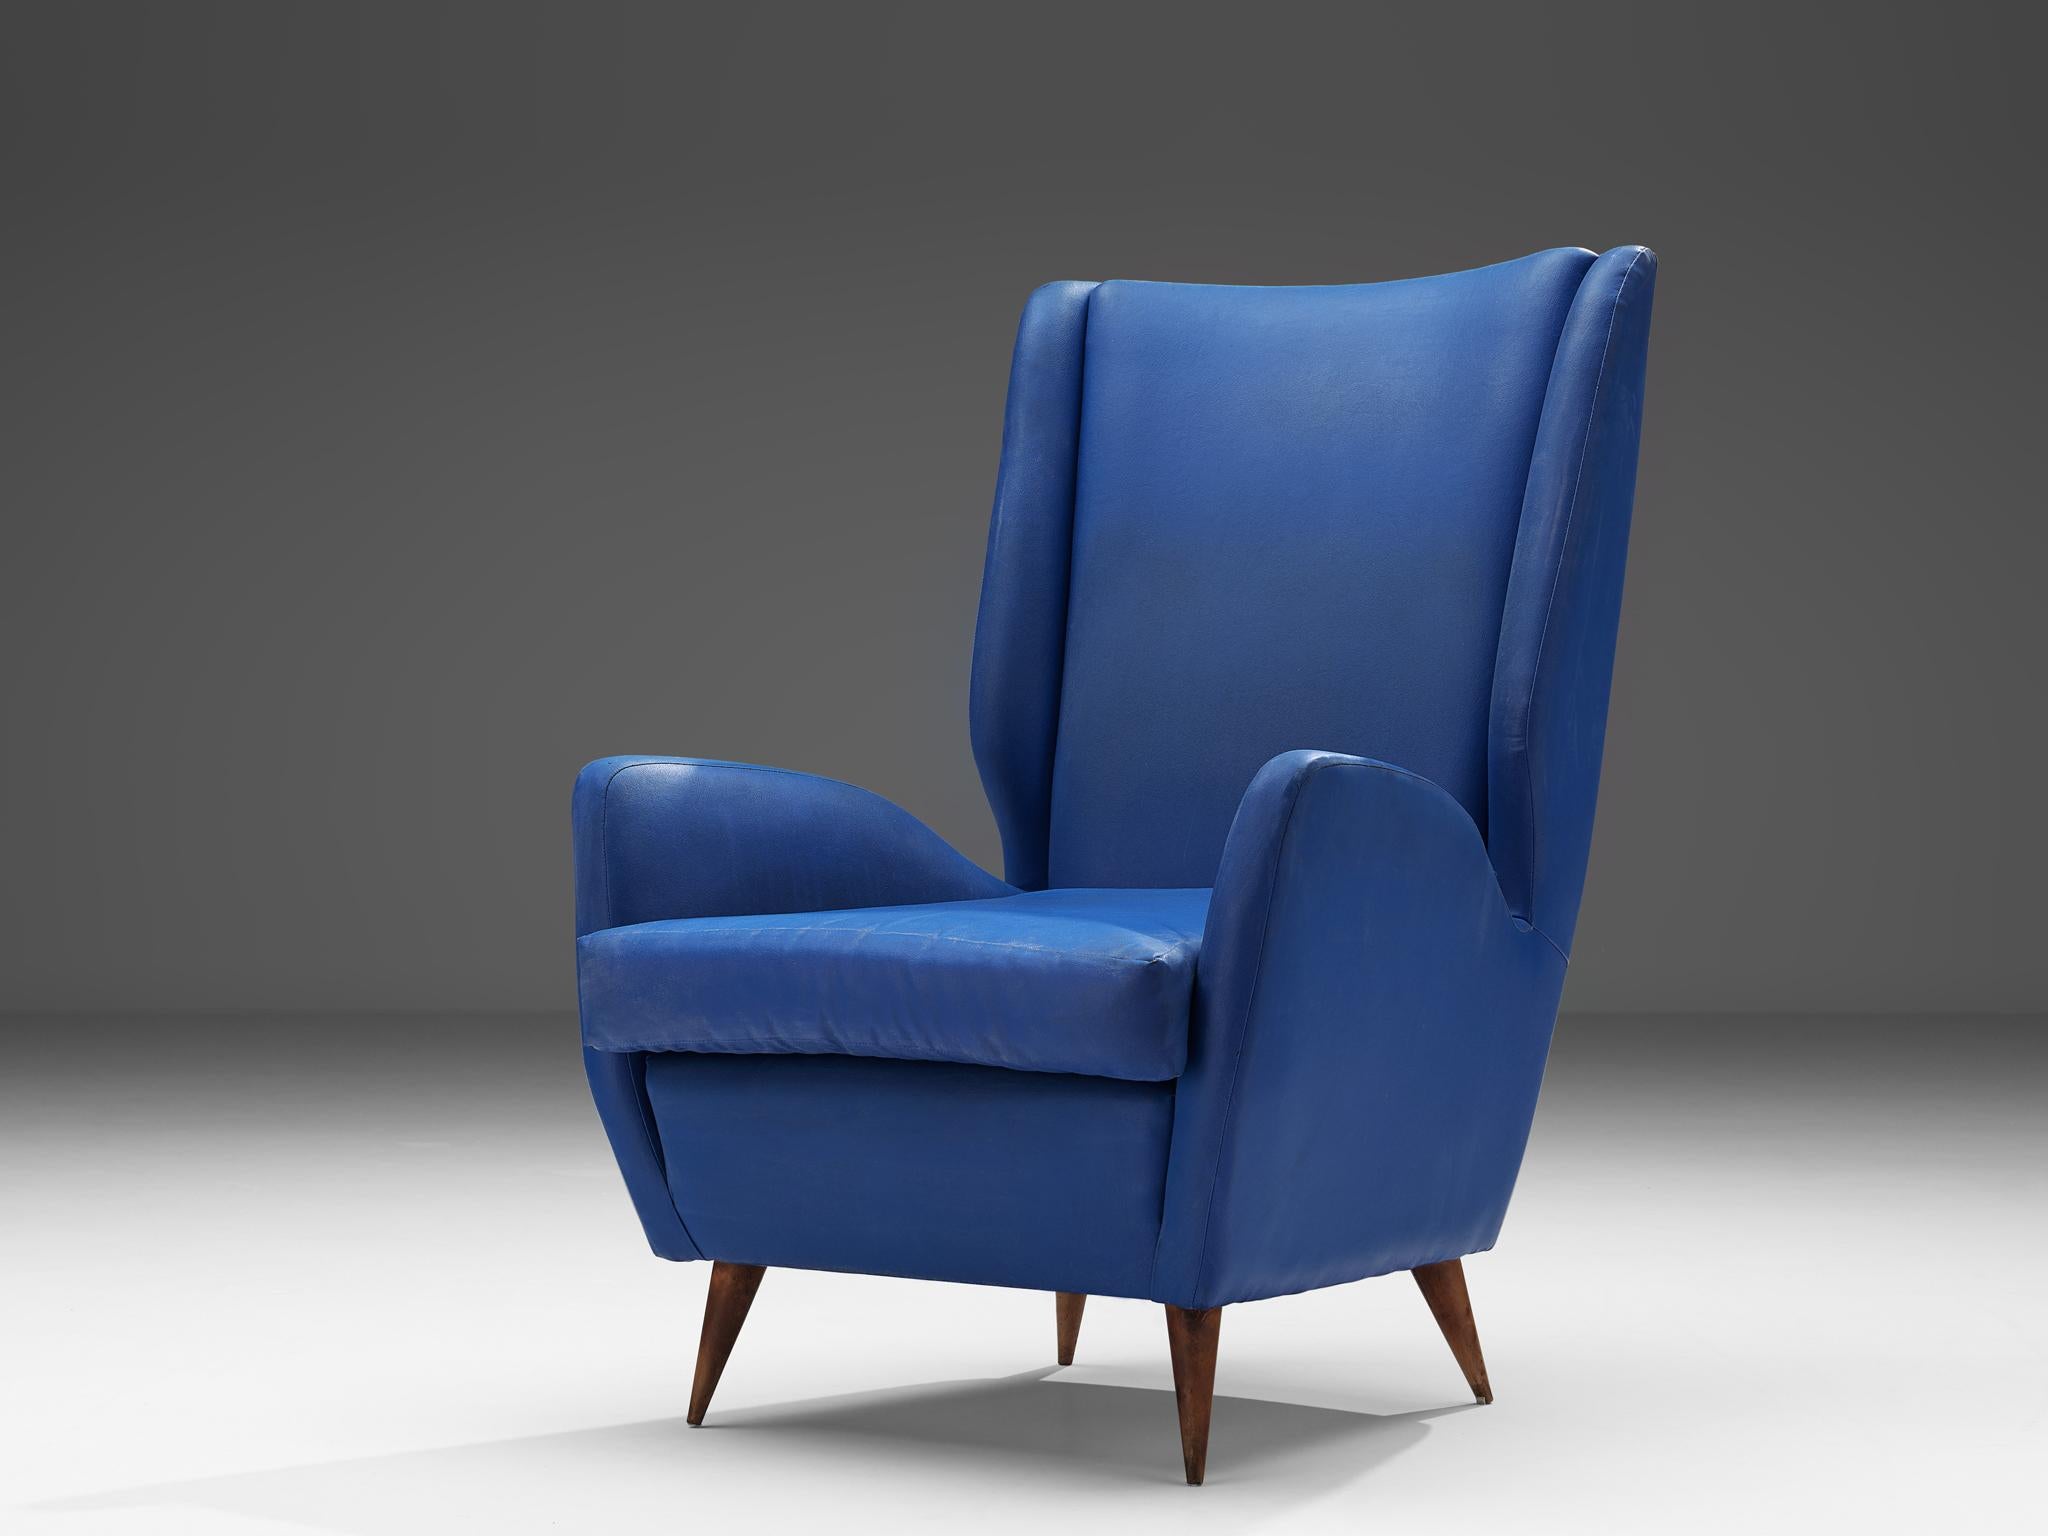 Italienischer Sessel mit hoher Rückenlehne, Holz, Leder, Italien, 1950er Jahre

Dieser elegant geformte Loungesessel italienischer Herkunft ist mit einem leuchtend blauen Kunstlederbezug ausgestattet und eignet sich als Blickfang in Ihrem Flur oder